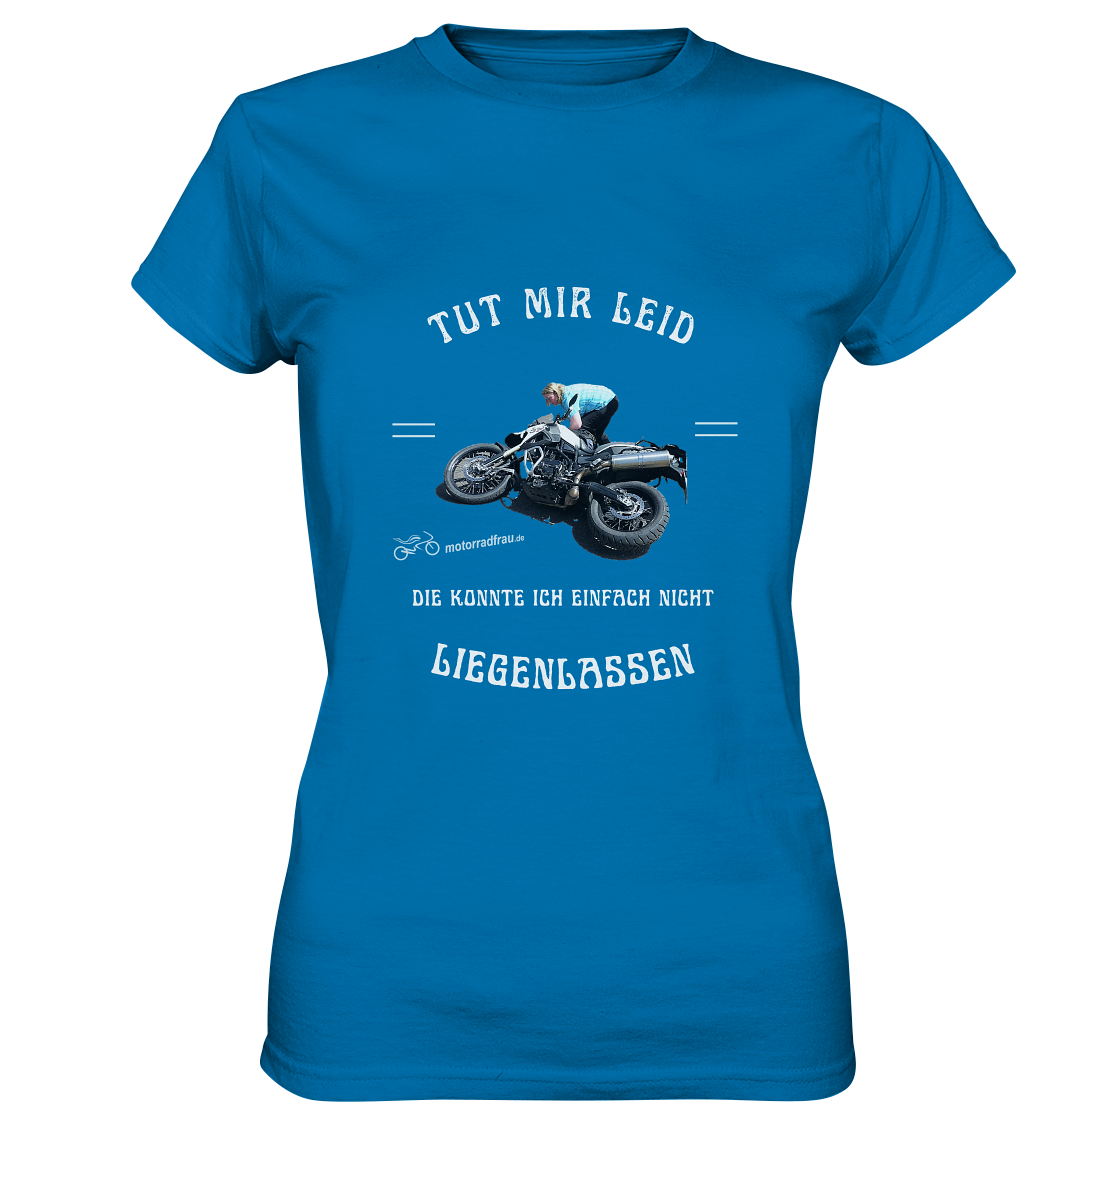 "Motorradfrau _ Tut mir leid, die konnte ich einfach nicht liegenlassen" | Damen-Shirt mit Foto & Motorrad-Spruch in hellem Design